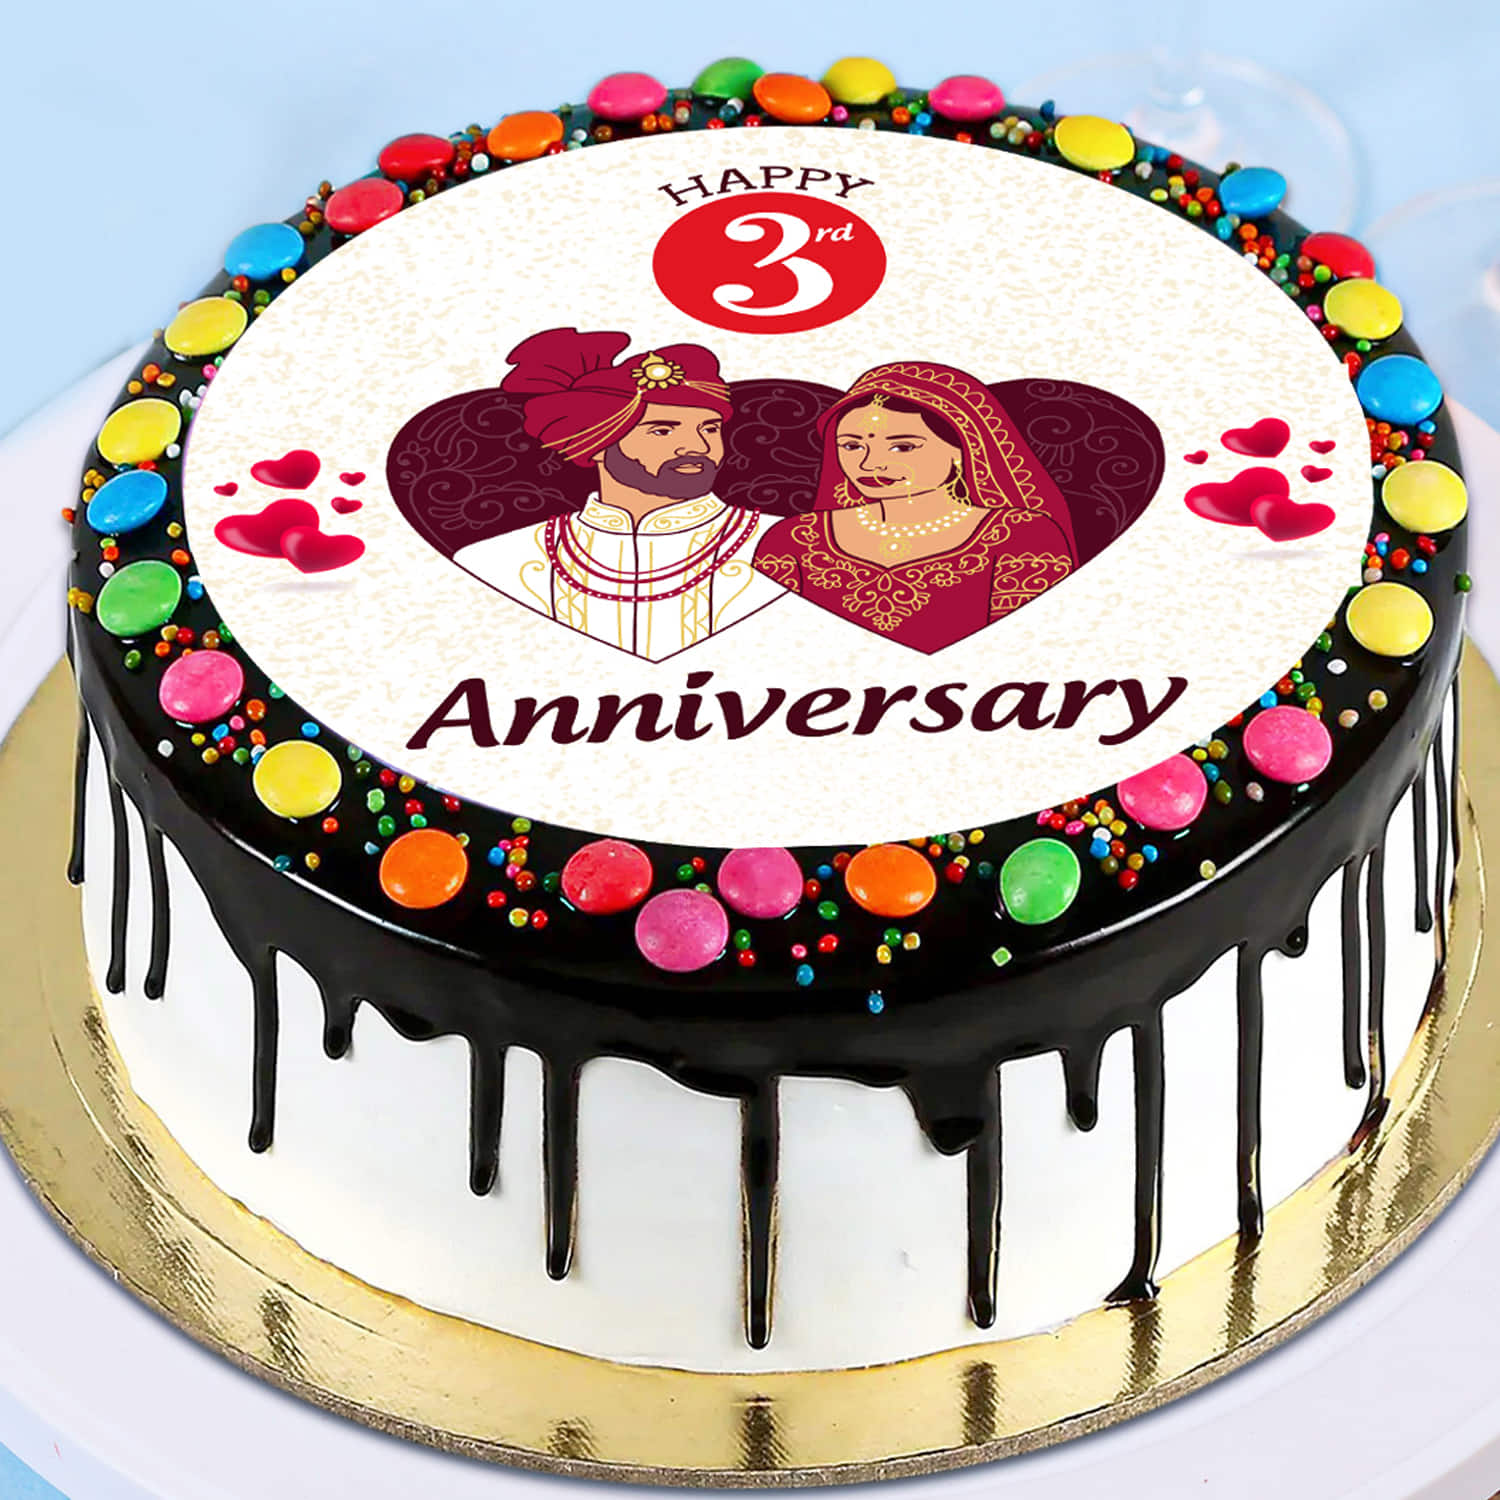 Anniversary Cake With Photo - 3 Story Round Photo Cake | Anniversary cake  with photo, Photo cake, Marriage anniversary cake